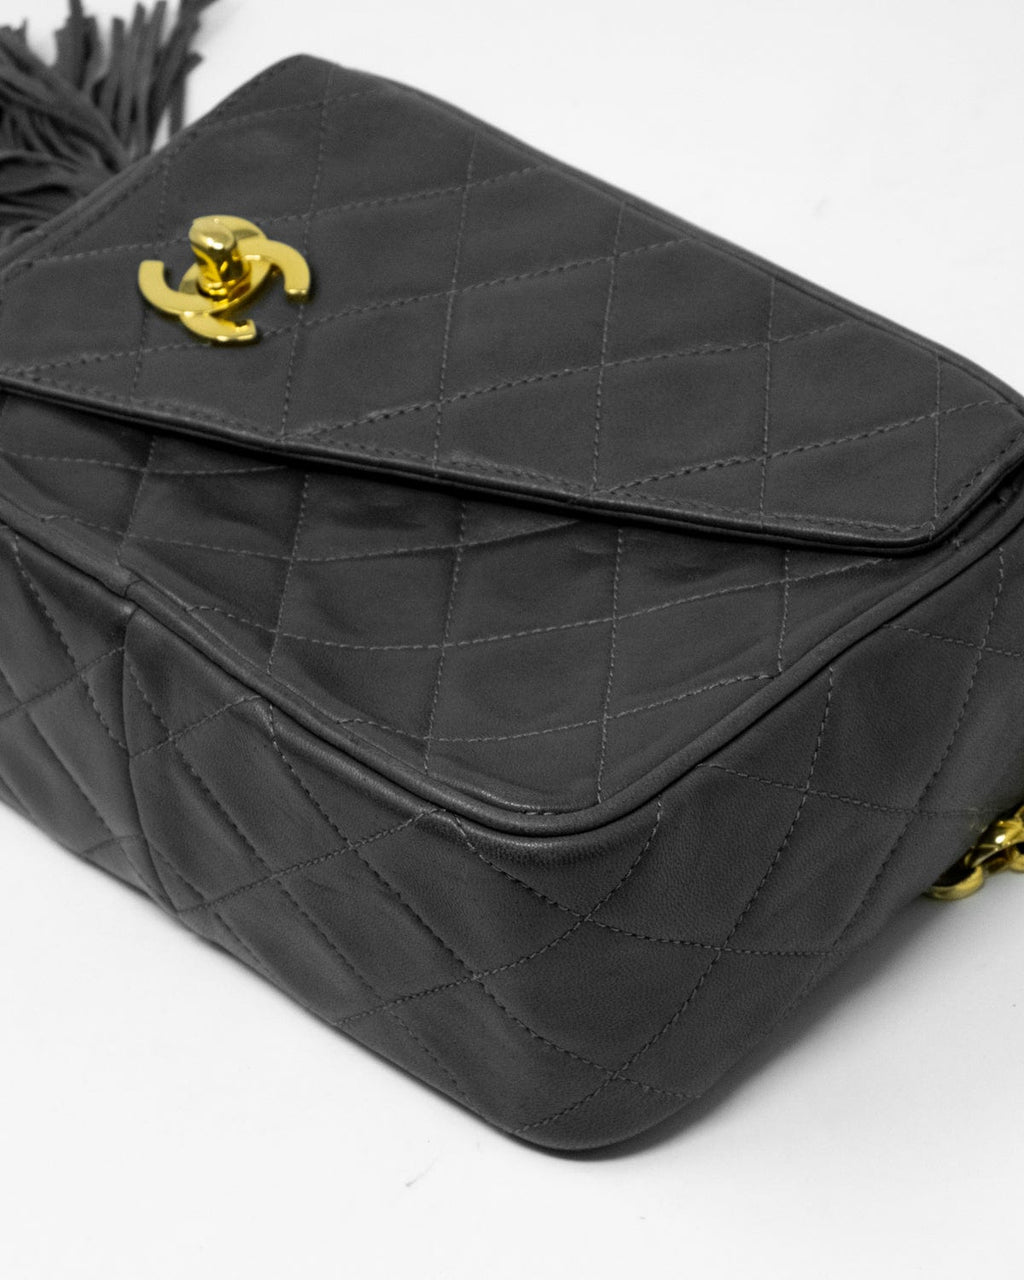 SOLD - Chanel Black CC Vintage Tassel Camera Bag - Quilted